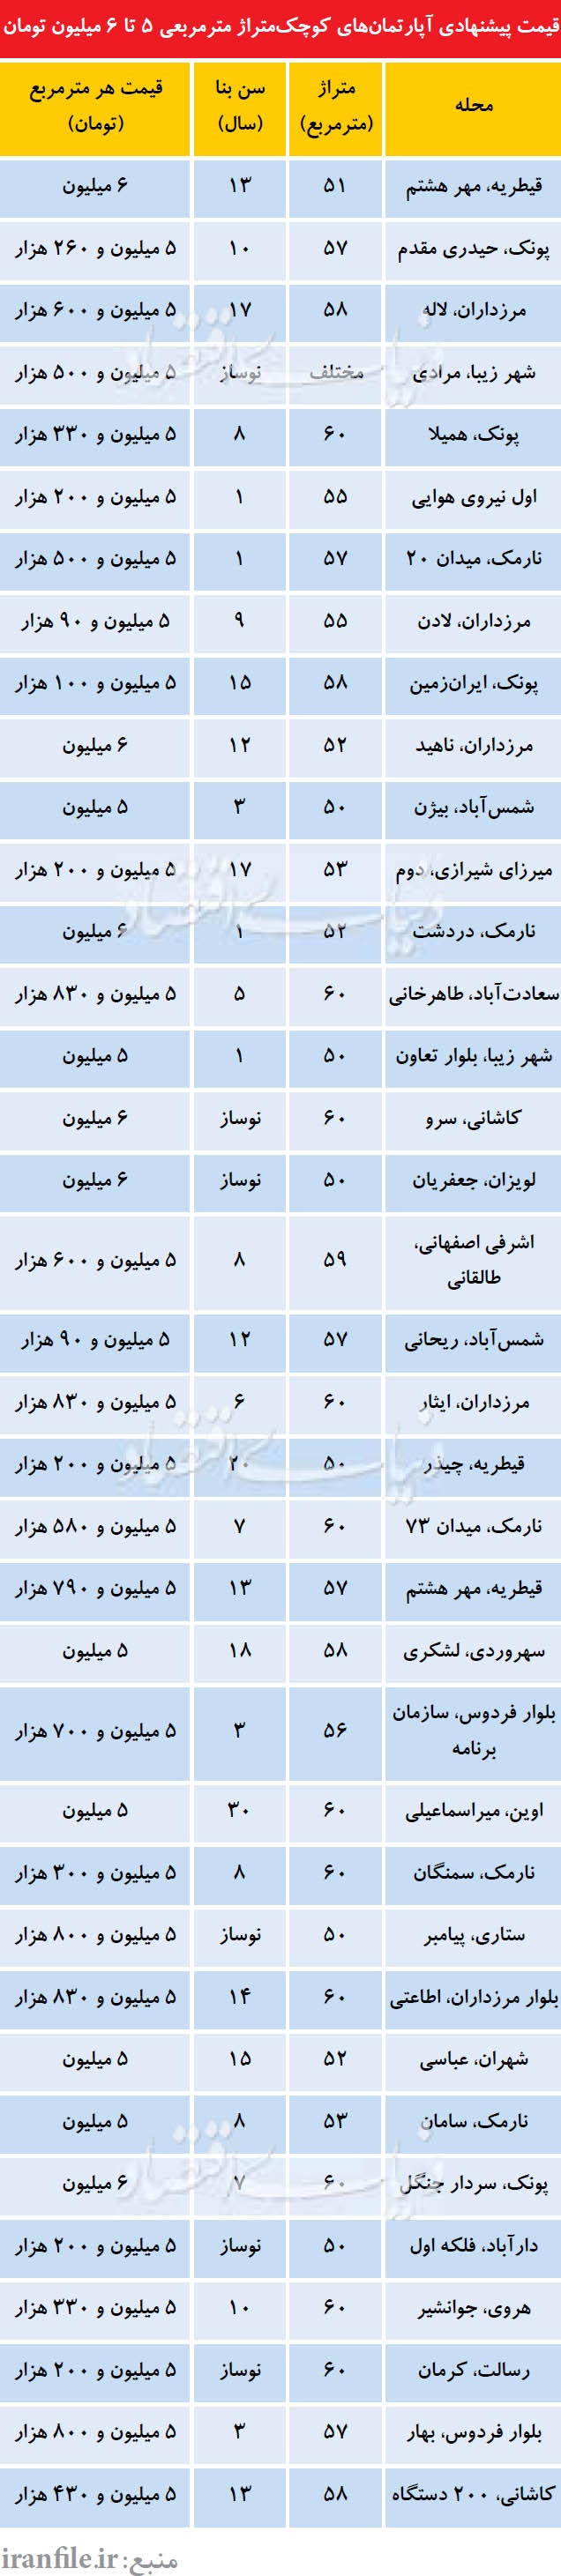 قیمت آپارتمانهای50 تا 60متری در تهران